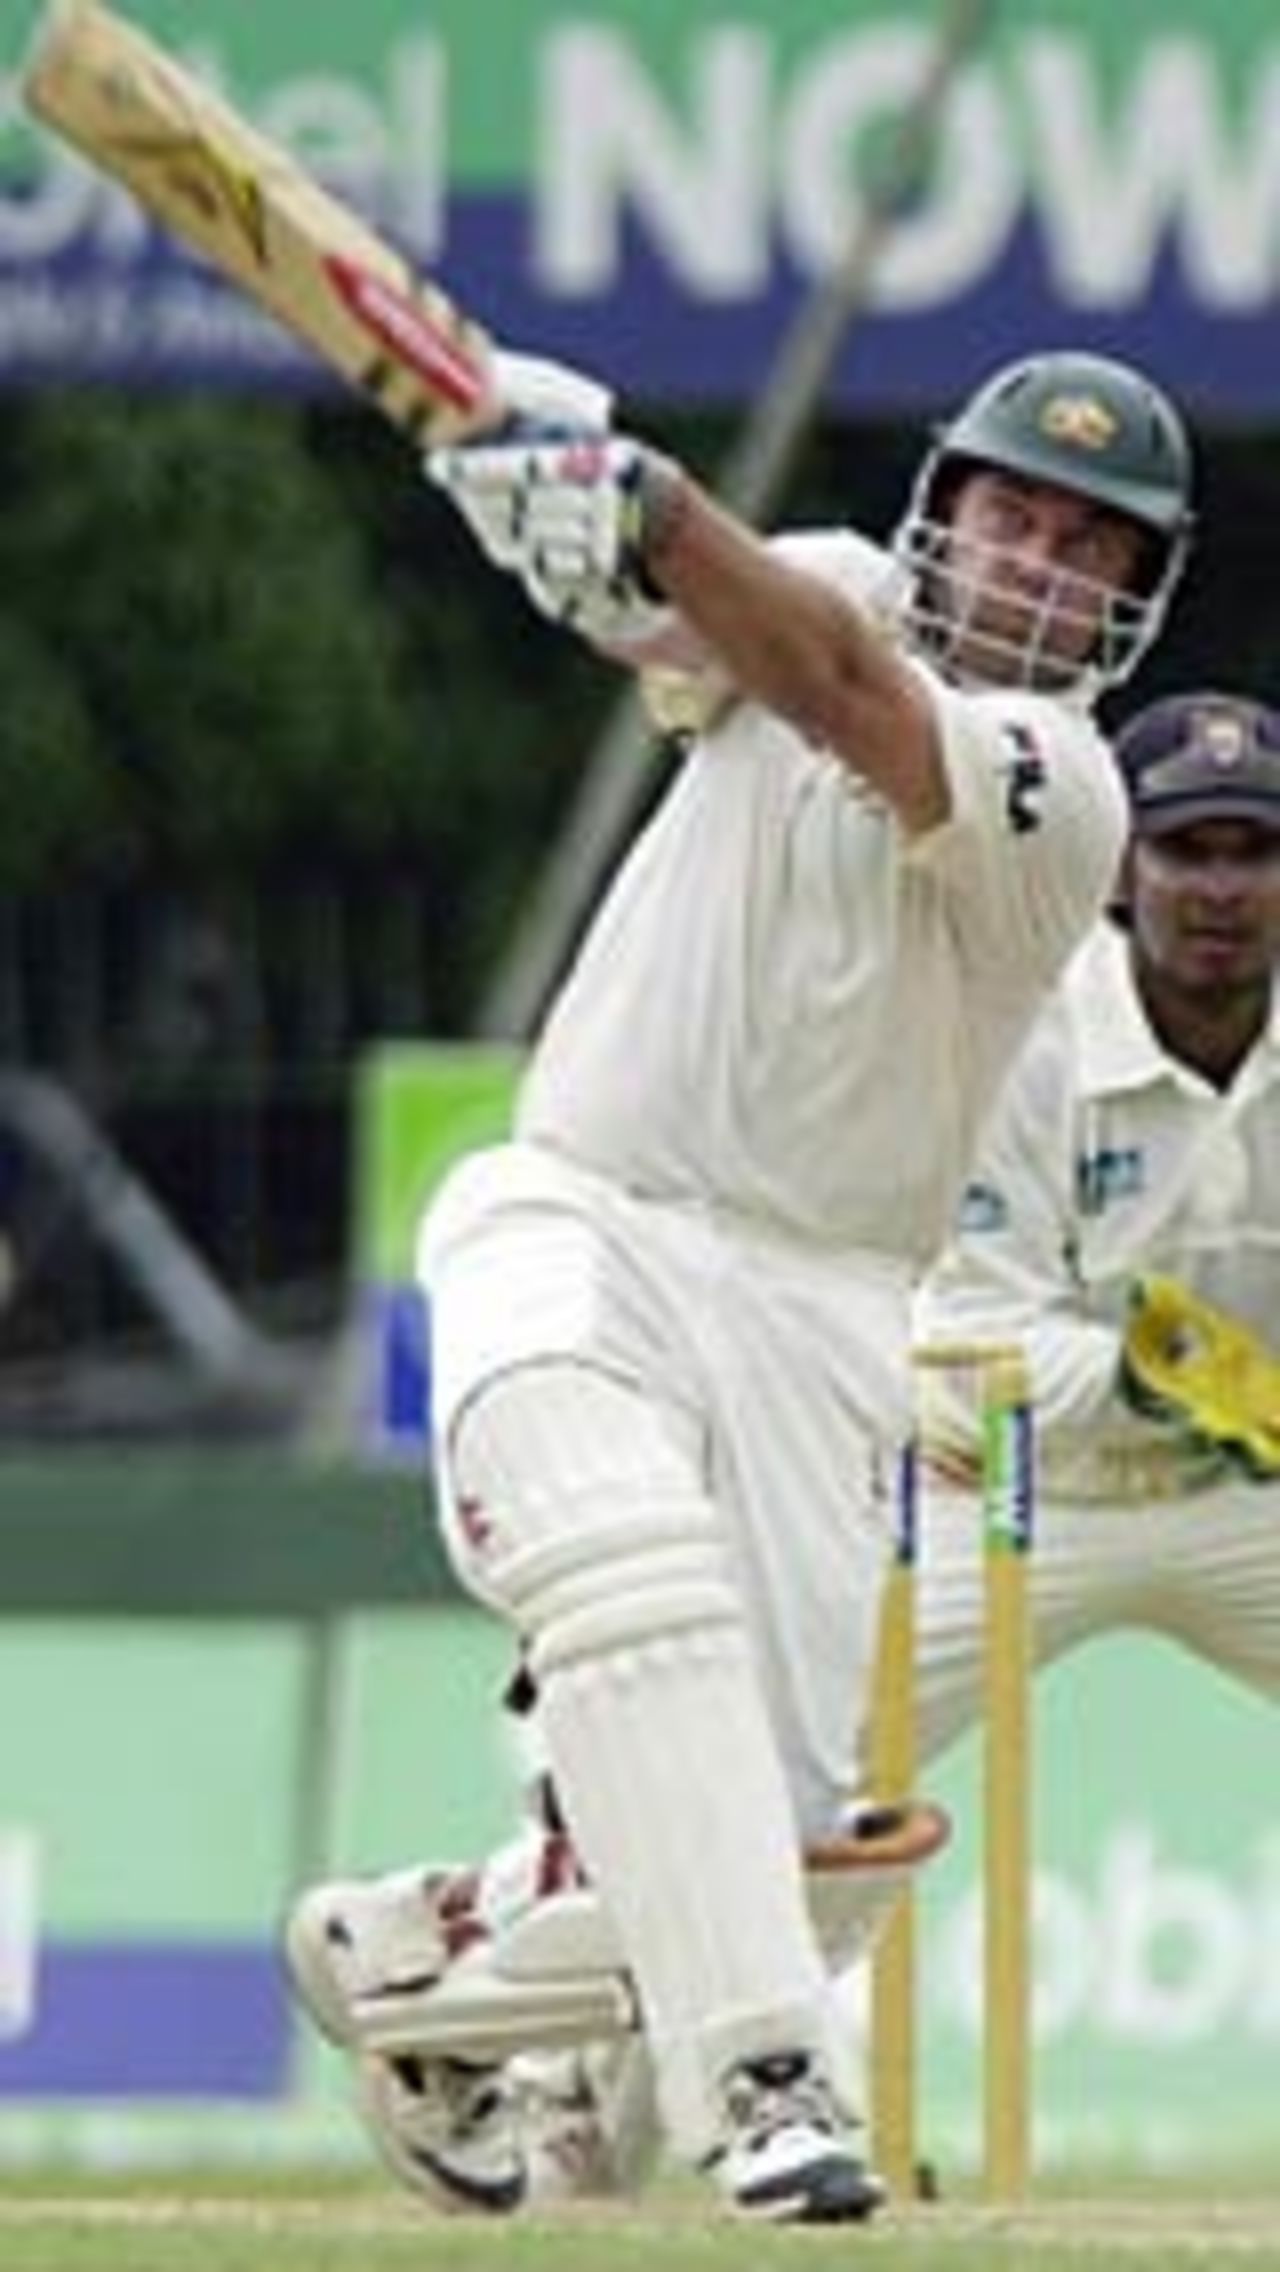 Darren Lehmann, Sri Lanka v Australia, 3rd Test, Colombo, Day 1, March 24, 2004